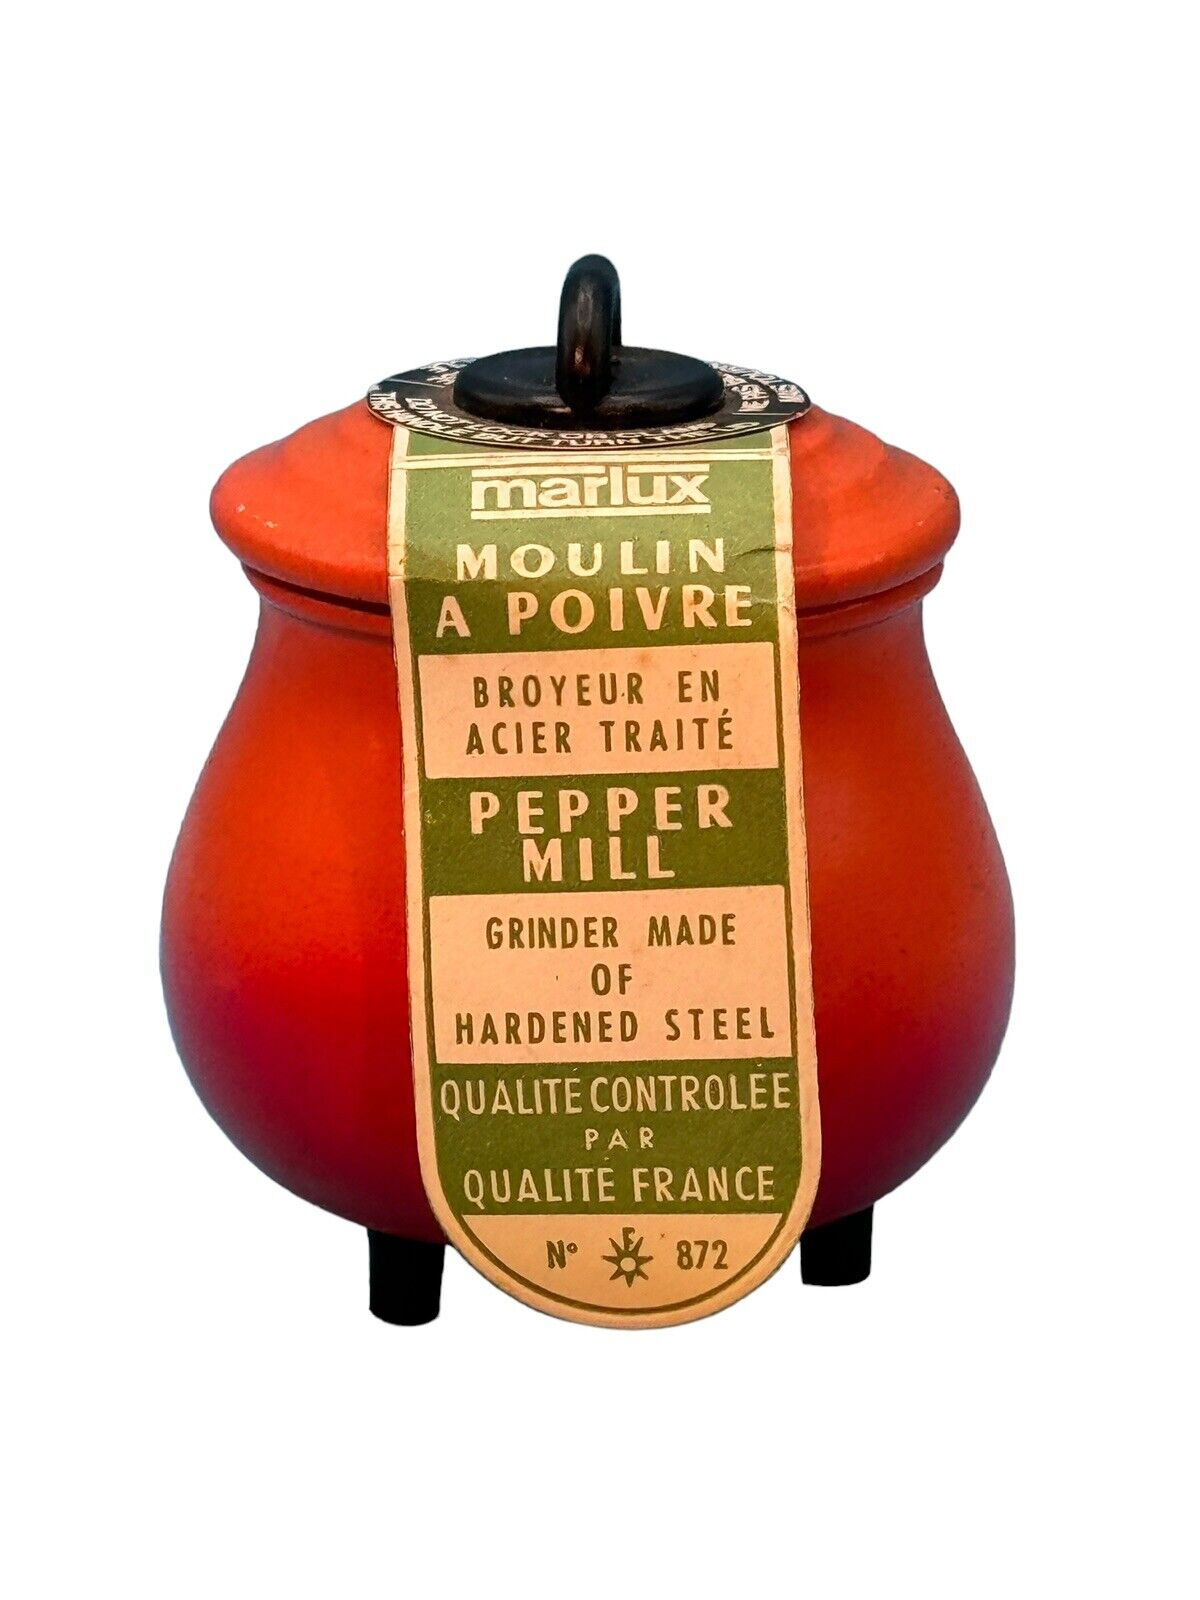 Vintage Marlux France Wooden Retro orange Cauldron Pot Pepper Mill Spice Grinder